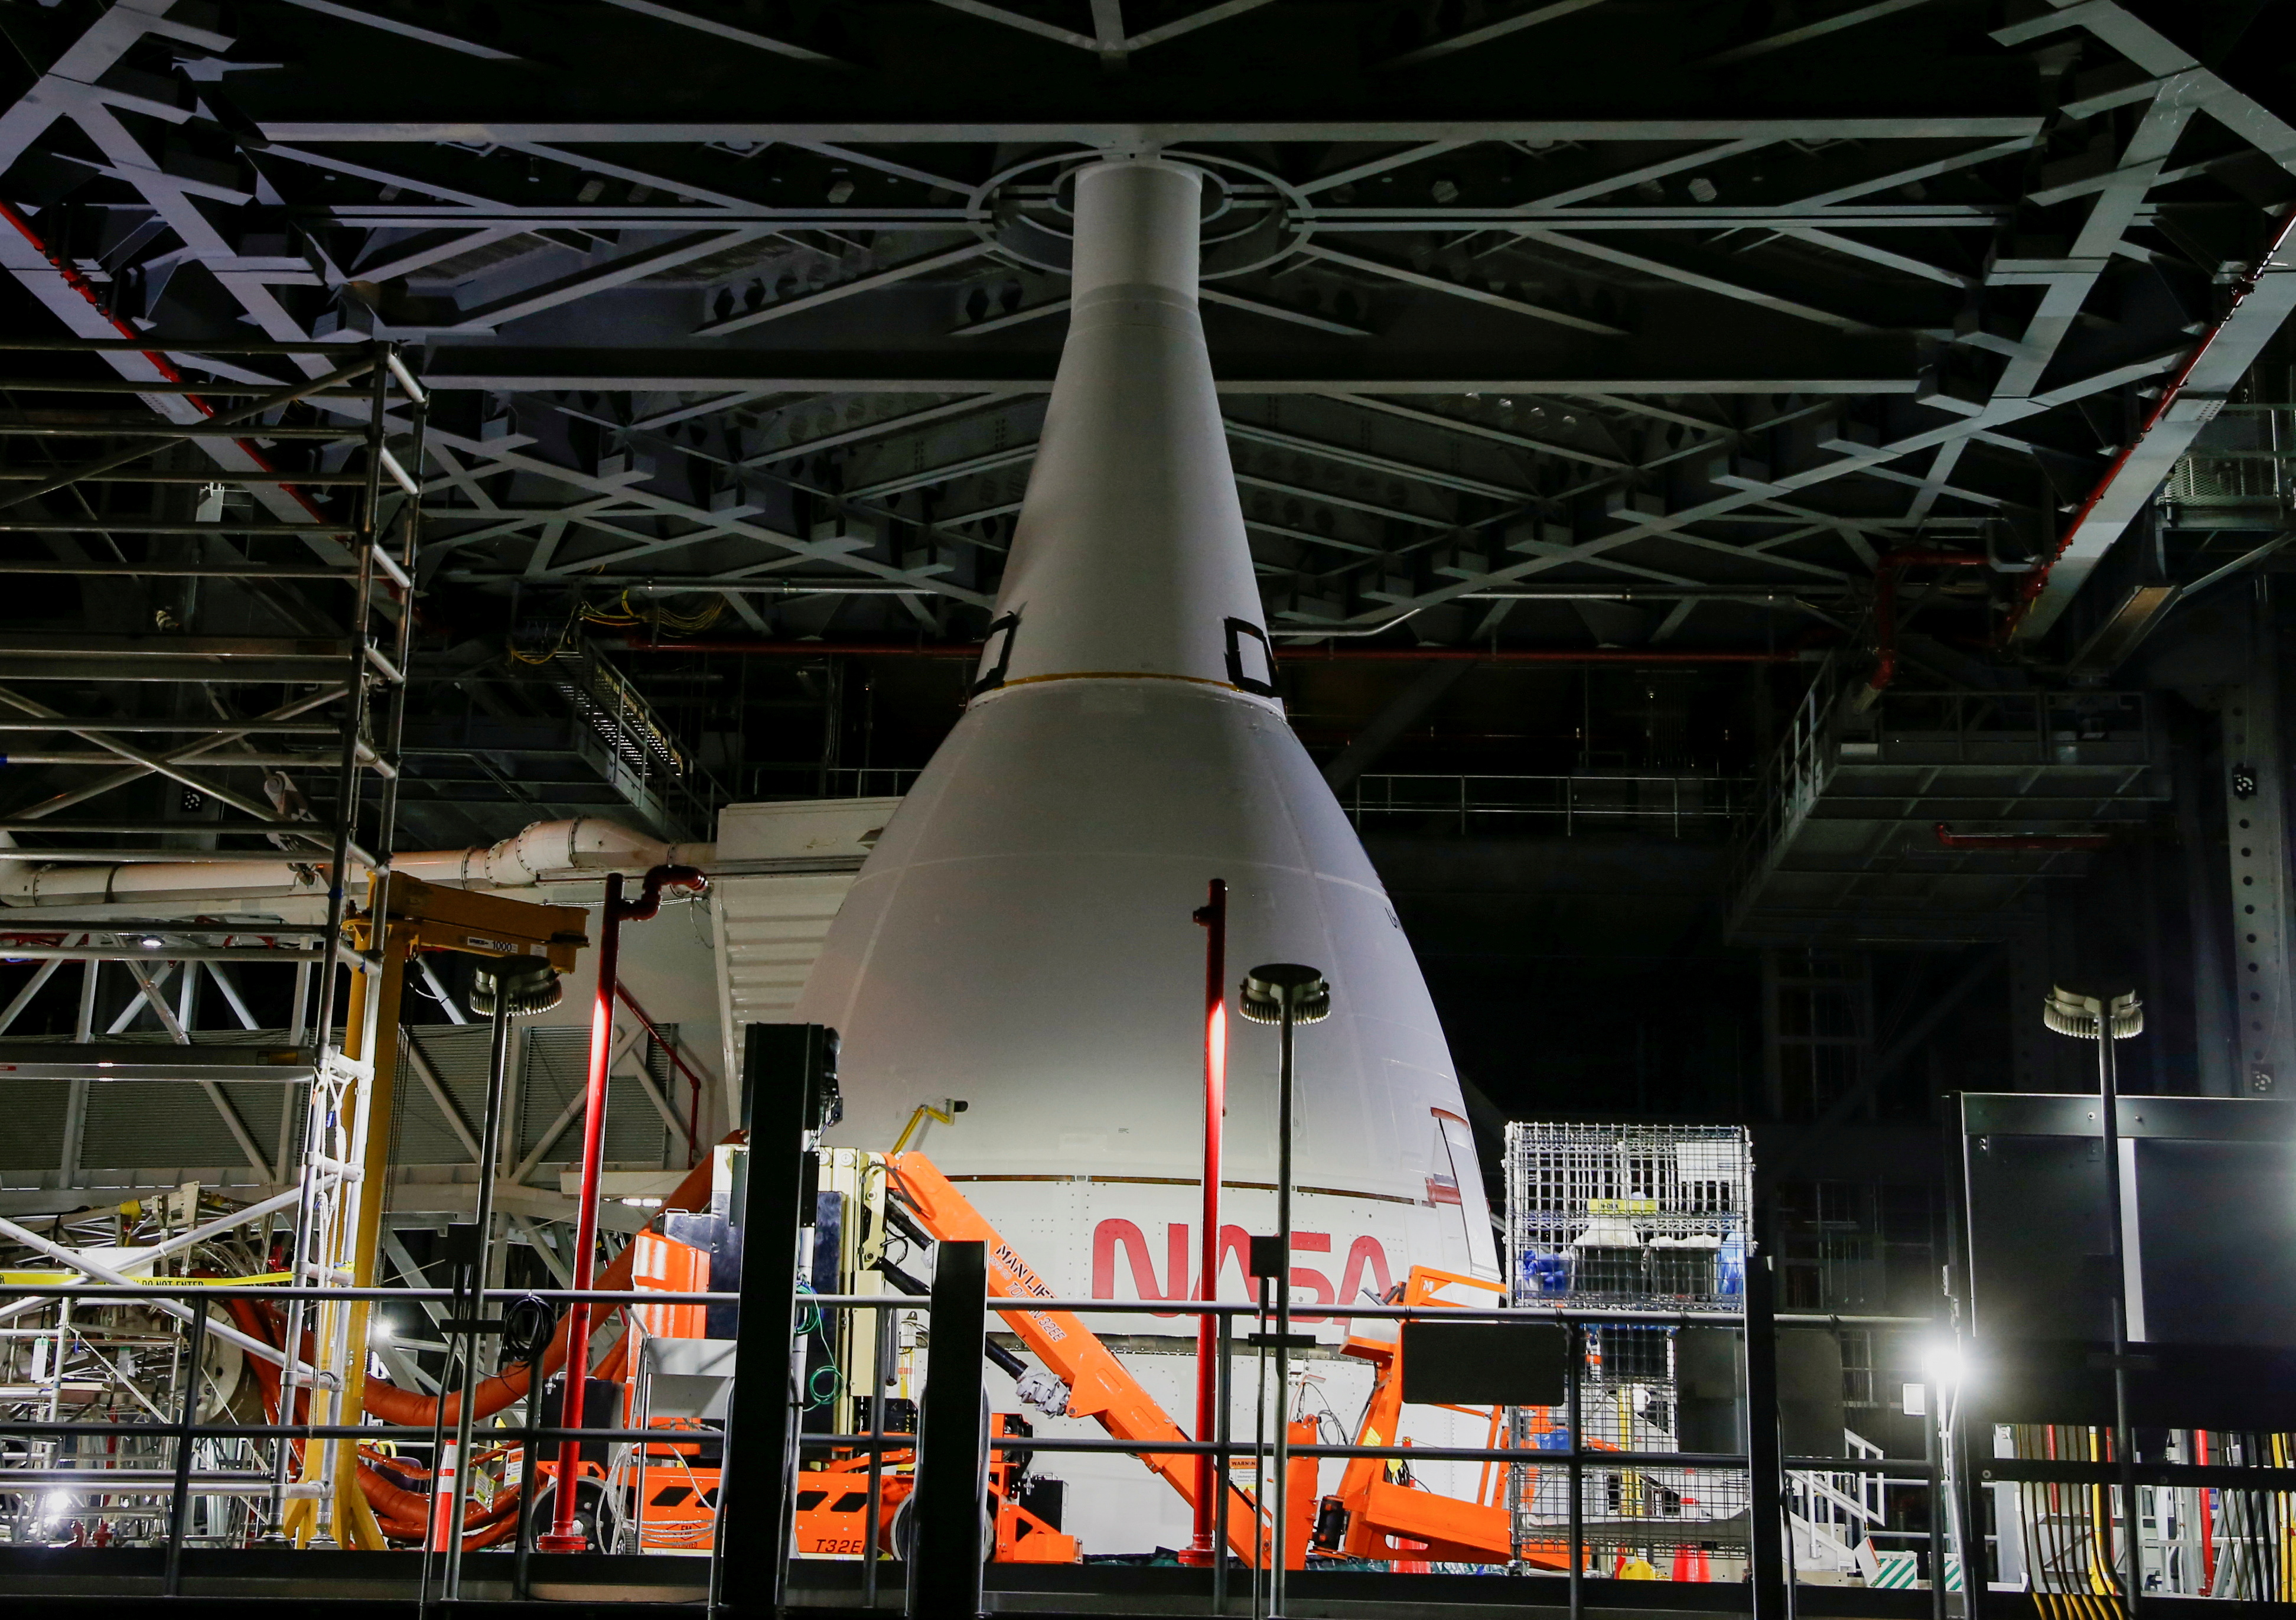 FOTO DE ARCHIVO: La cápsula de tripulación Orion del cohete lunar del programa Artemis de la NASA se muestra dentro del enorme edificio de ensamblaje de vehículos en el Centro Espacial Kennedy en Cabo Cañaveral, Florida, EE. UU. 5 de noviembre de 2021. REUTERS/Joe Skipper/Foto de archivo